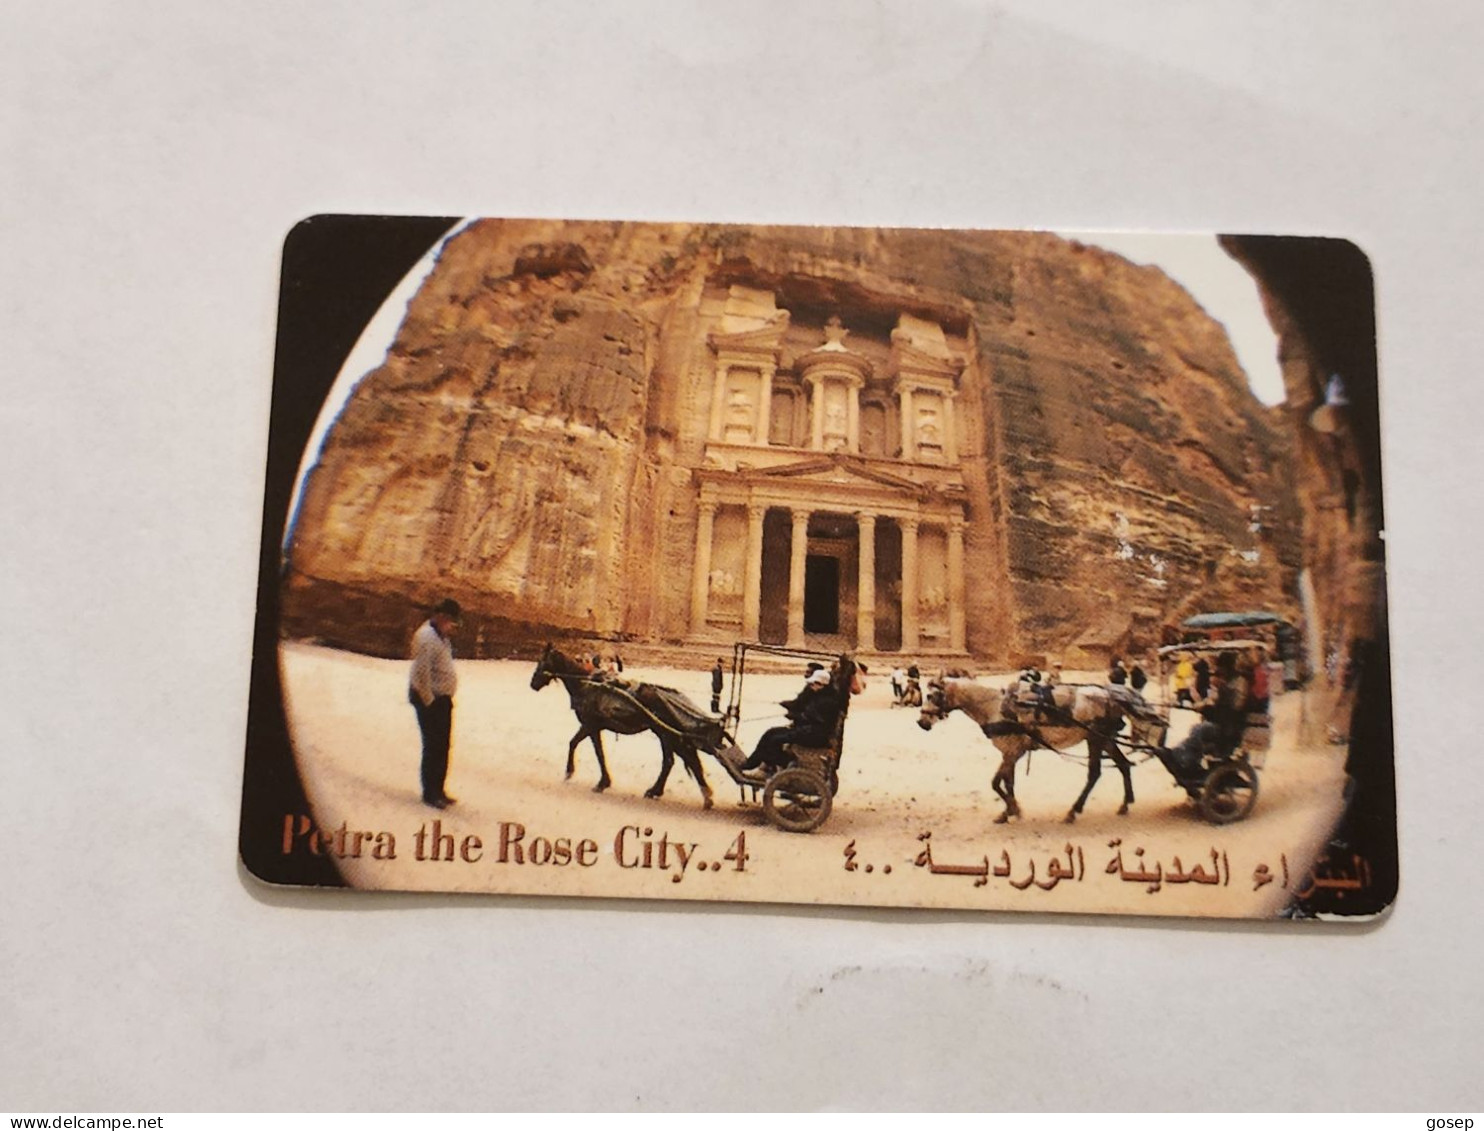 JORDAN-(JO-ALO-0078)-Petra-The Rose City4-(200)-(4000-187203)-(1JD)-(04/2001)-used Card+1card Prepiad Free - Jordania